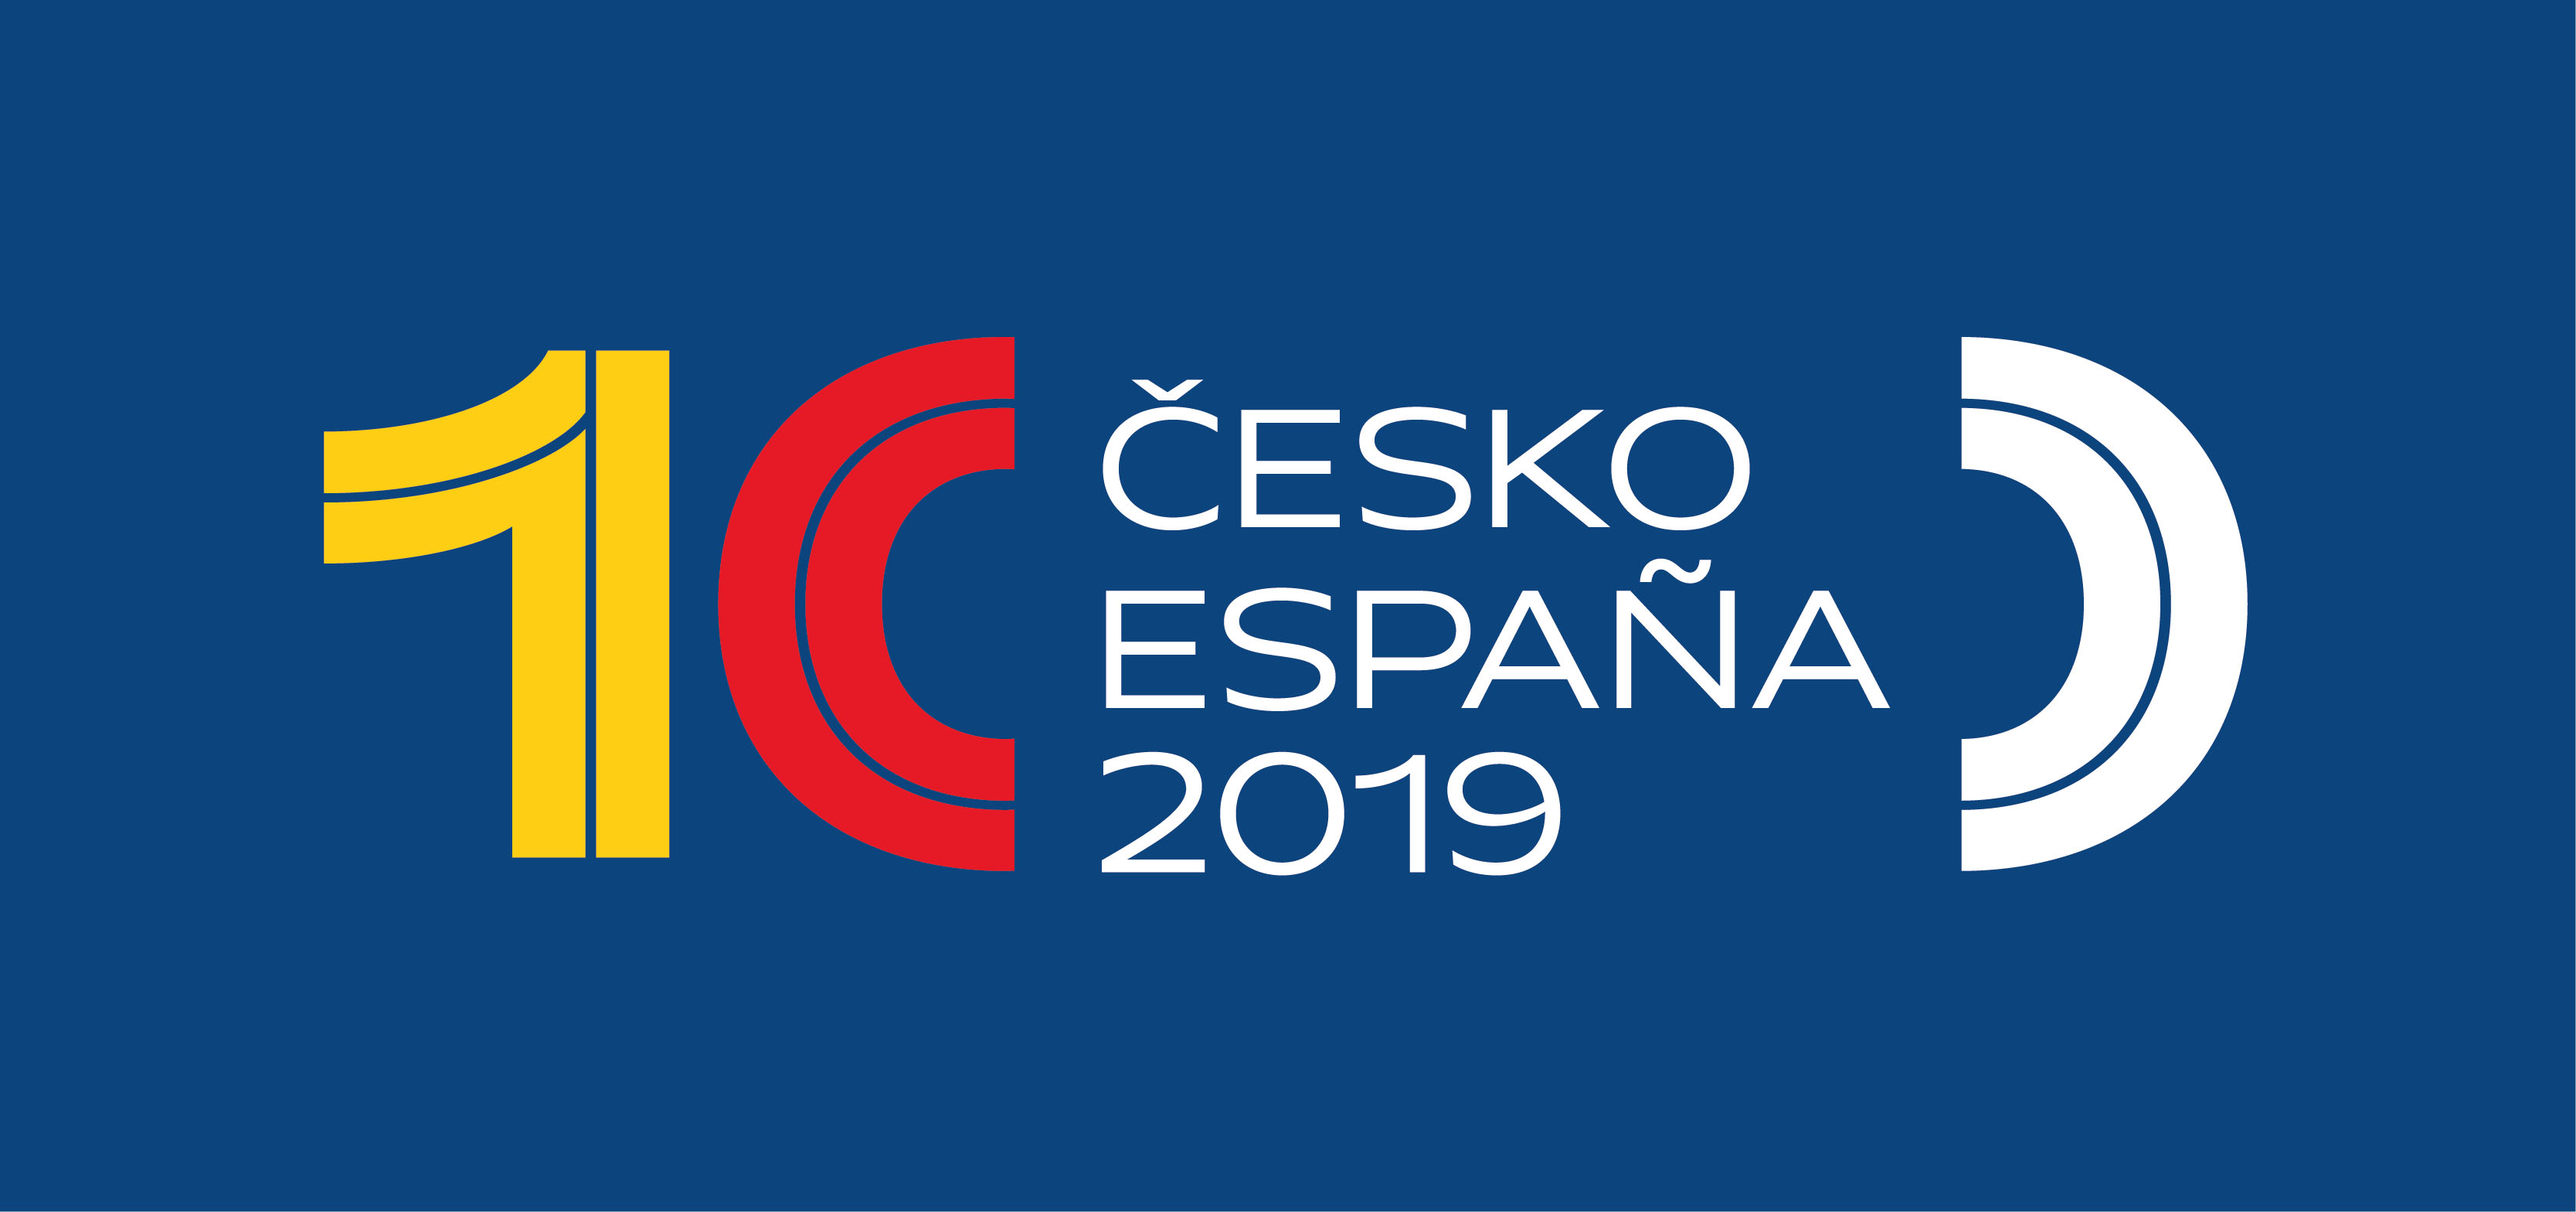 Přechod k demokracii ve Španělsku a v Československu/České republice